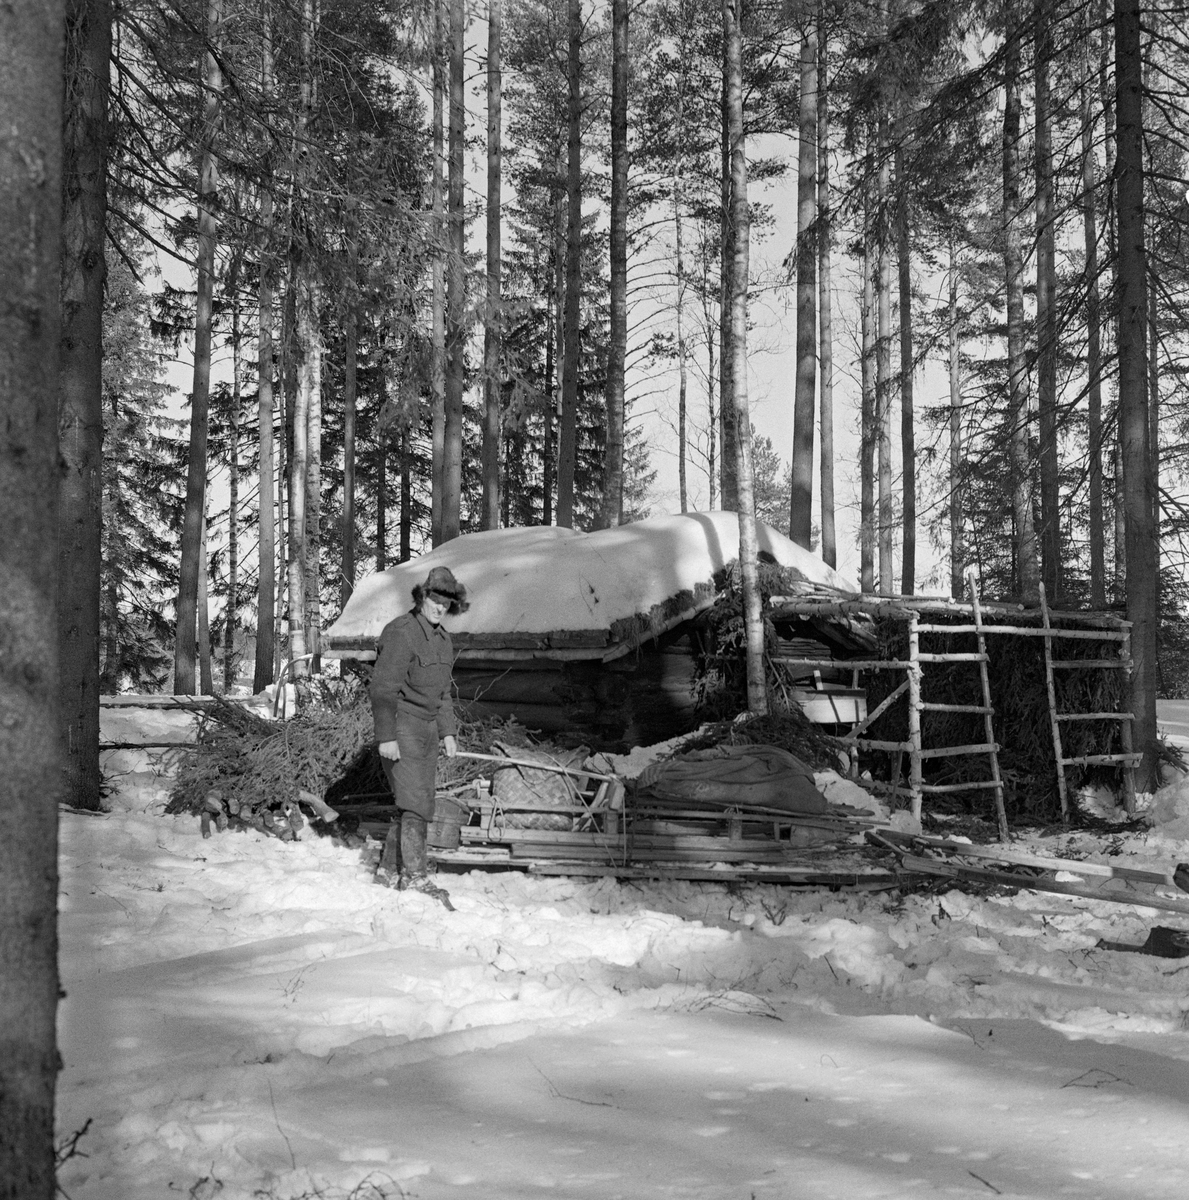 Bygging av barstall ved Letjerndalskoia i Norsk Skogbruksmuseums friluftsmuseum på Prestøya i Elverum.  Fotografiet ble tatt i forbindelse med innspillinga av dokumentarfilmen «Liv og husvær i skogen» vinteren 1962. Filmskaperne ønsket å vise utviklinga fra primitive, trekkfulle innkvarteringsforhold for skogsarbeidere og hester til det som da var moderne og atskillig mer komfortabelt.  For å rekonstruere den fortidige virkeligheten ble det altså reist en barstall rundt et skjellett av gran- og bjørkespiler inntil den gamle ljørkoia på museet.  Da dette fotografiet ble tatt var spileverket på plass, og en av barveggene var ferdig.  Foran koiene ser vi en av karene som var med å tilrettela for filminnspillingen foran en slede med en del gammelt utstyr som skulle brukes som rekvisitter.